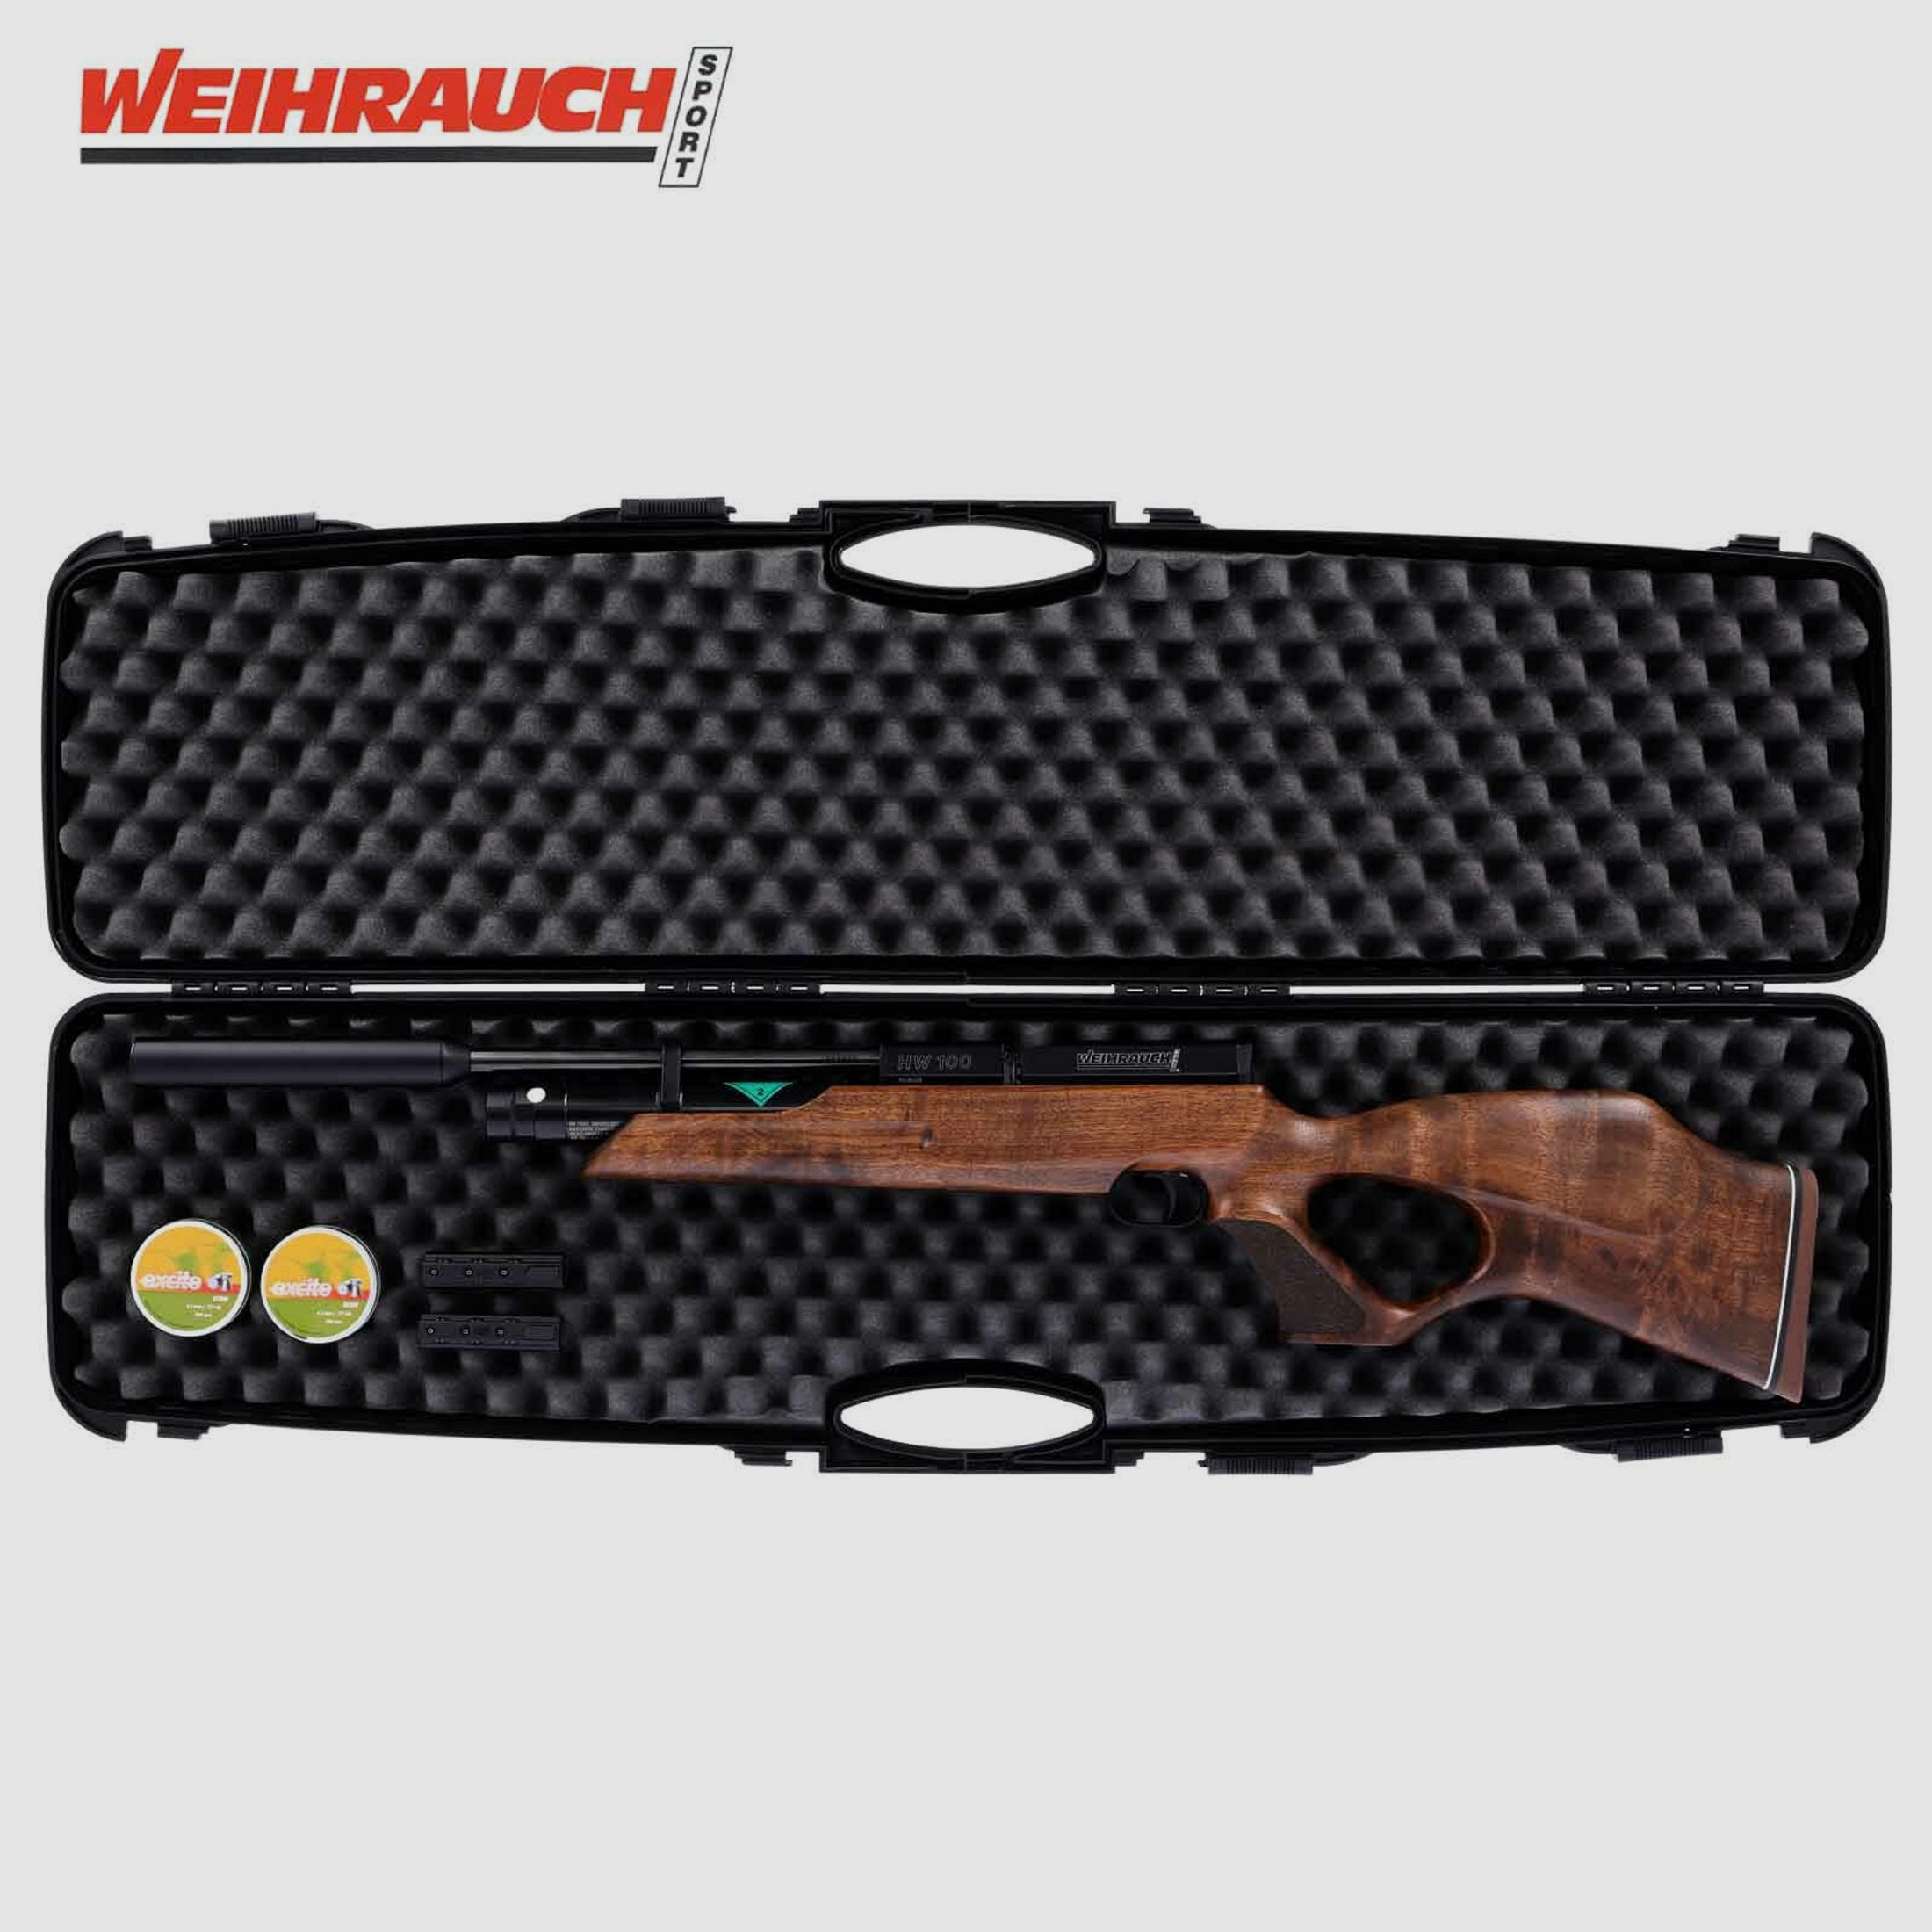 SET Weihrauch HW 100 TK Pressluftgewehr mit Schalldämpfer 4,5 mm (P18) + Koffer inklusive 2 Zahlenschlösser + 1000 Umarex Mosquito Diabolos